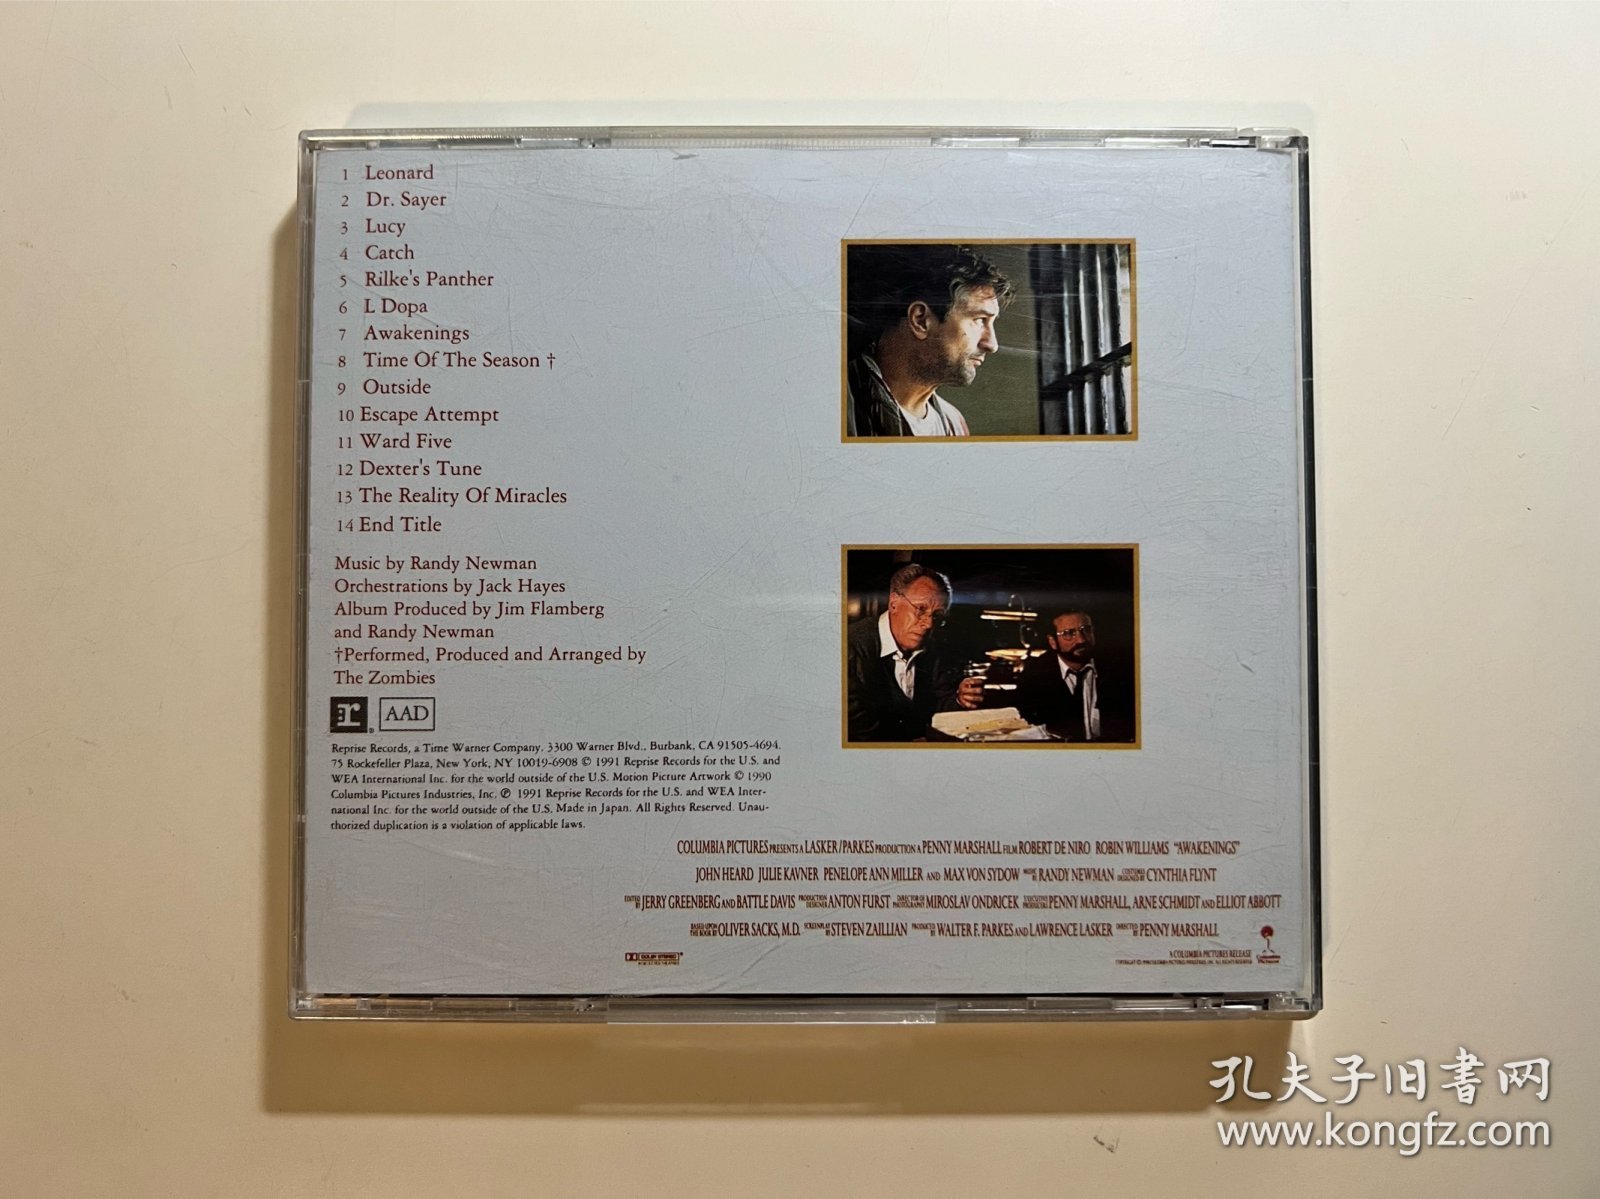 无语问苍天 原声 Randy Newman - Awakenings (Music From The Motion Picture)，CD，91年日版，无侧标，外壳磨痕裂痕，盘面有点痕迹